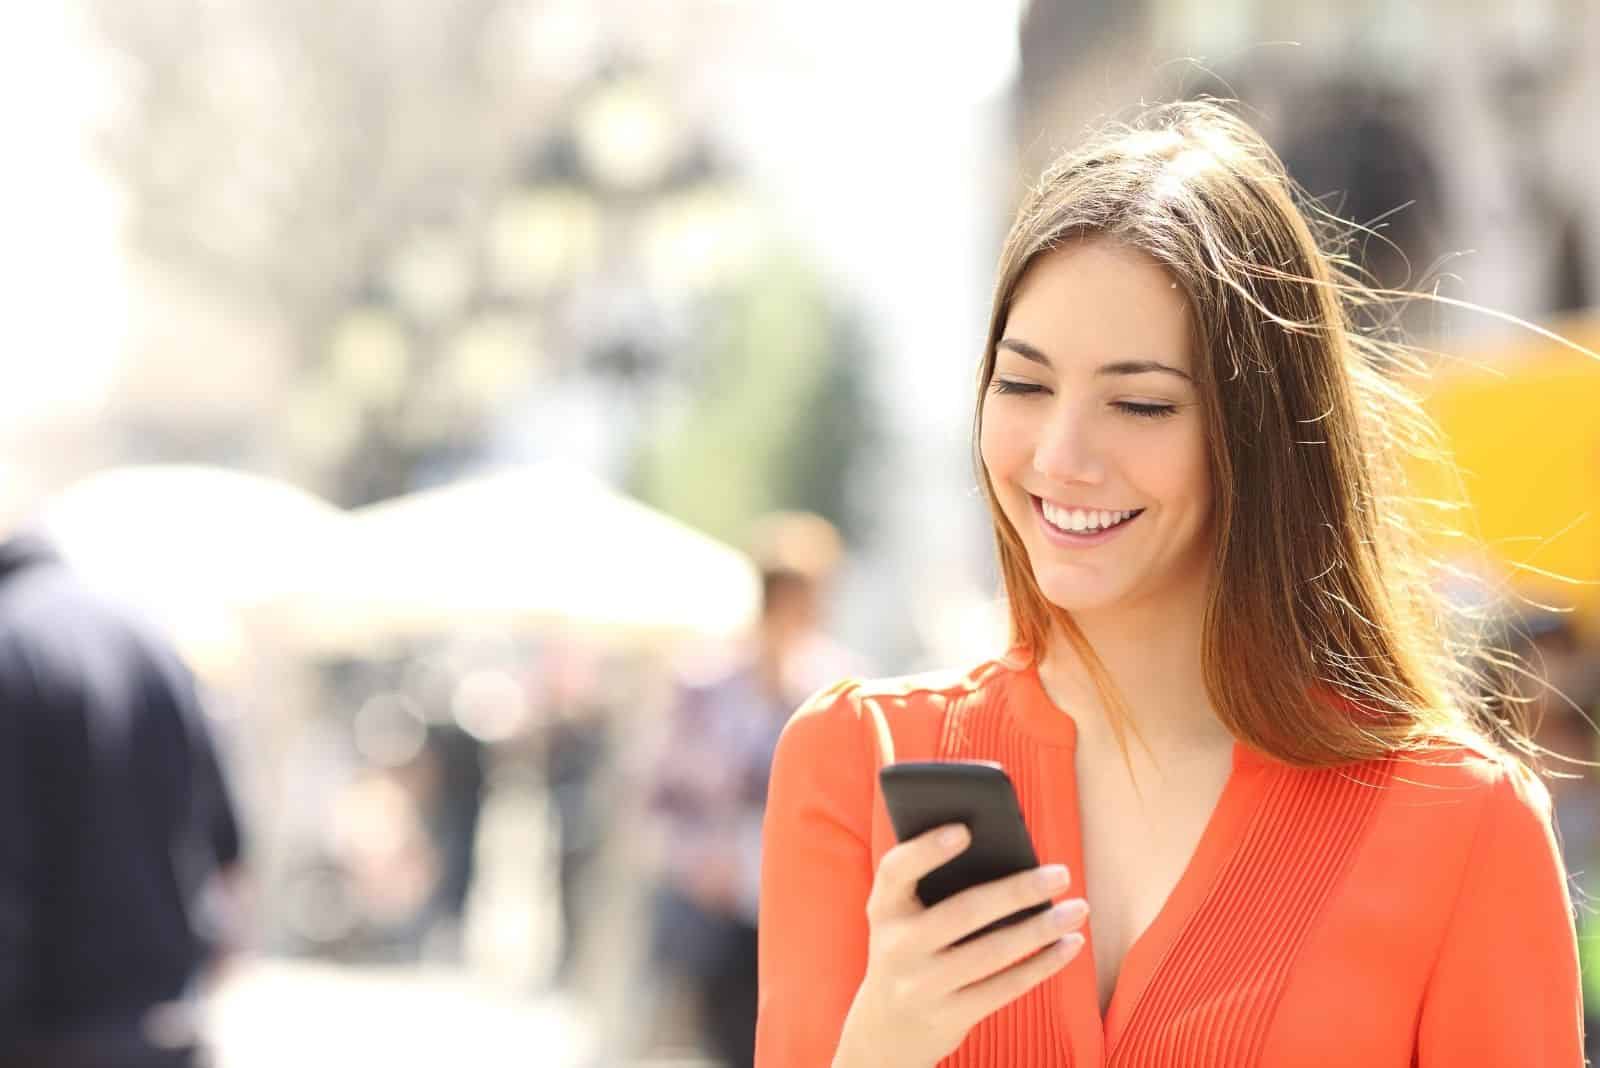 Femme portant une chemise orange en train d'envoyer un texto sur un téléphone intelligent en marchant dans la rue par une journée ensoleillée.